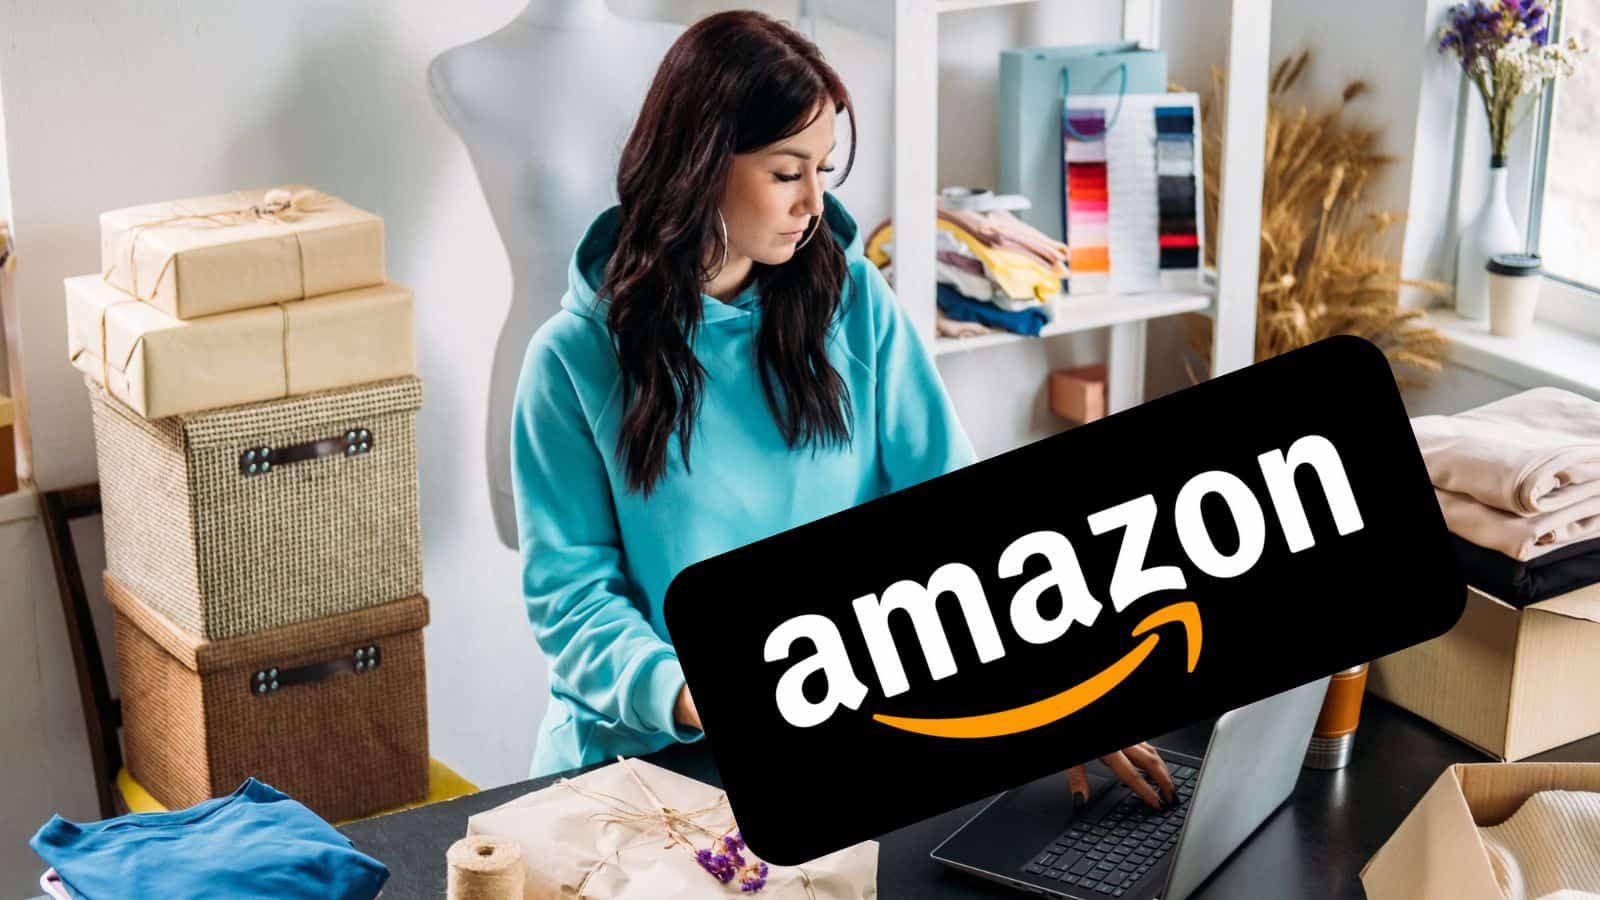 Amazon è FOLLE: GRATIS smartphone e prezzi al 90%